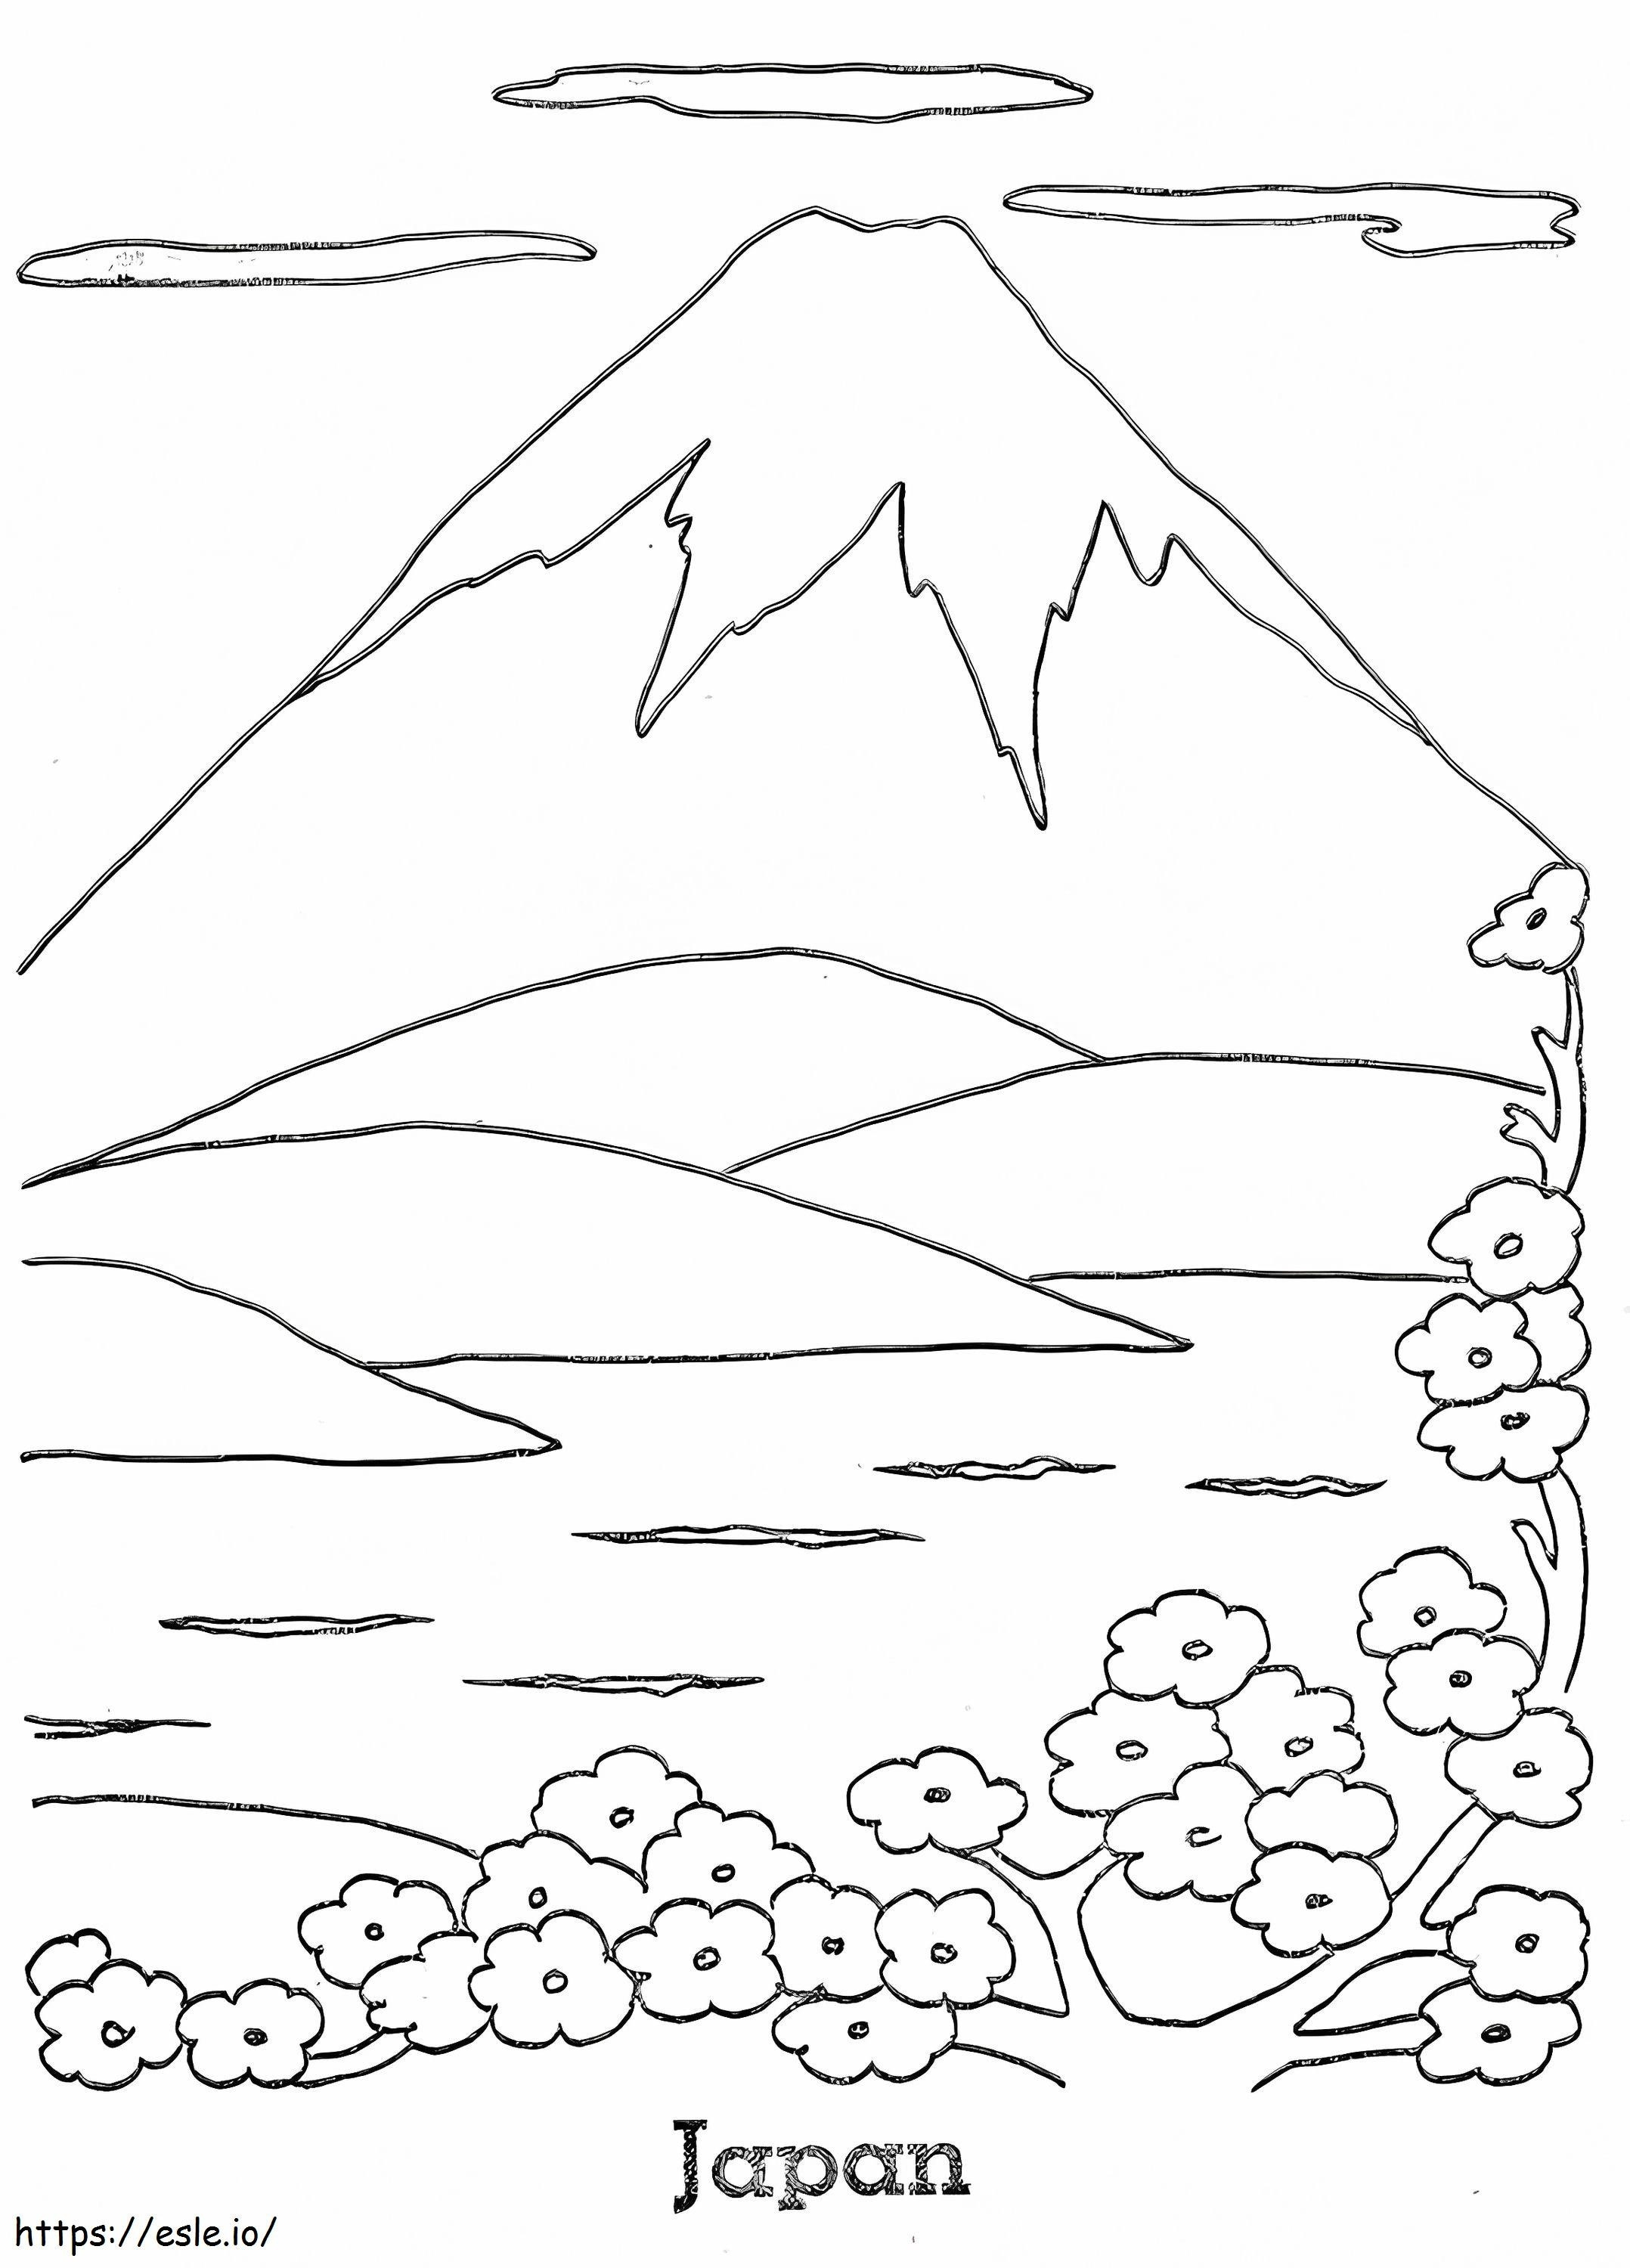 Coloriage Montagne au Japon à imprimer dessin